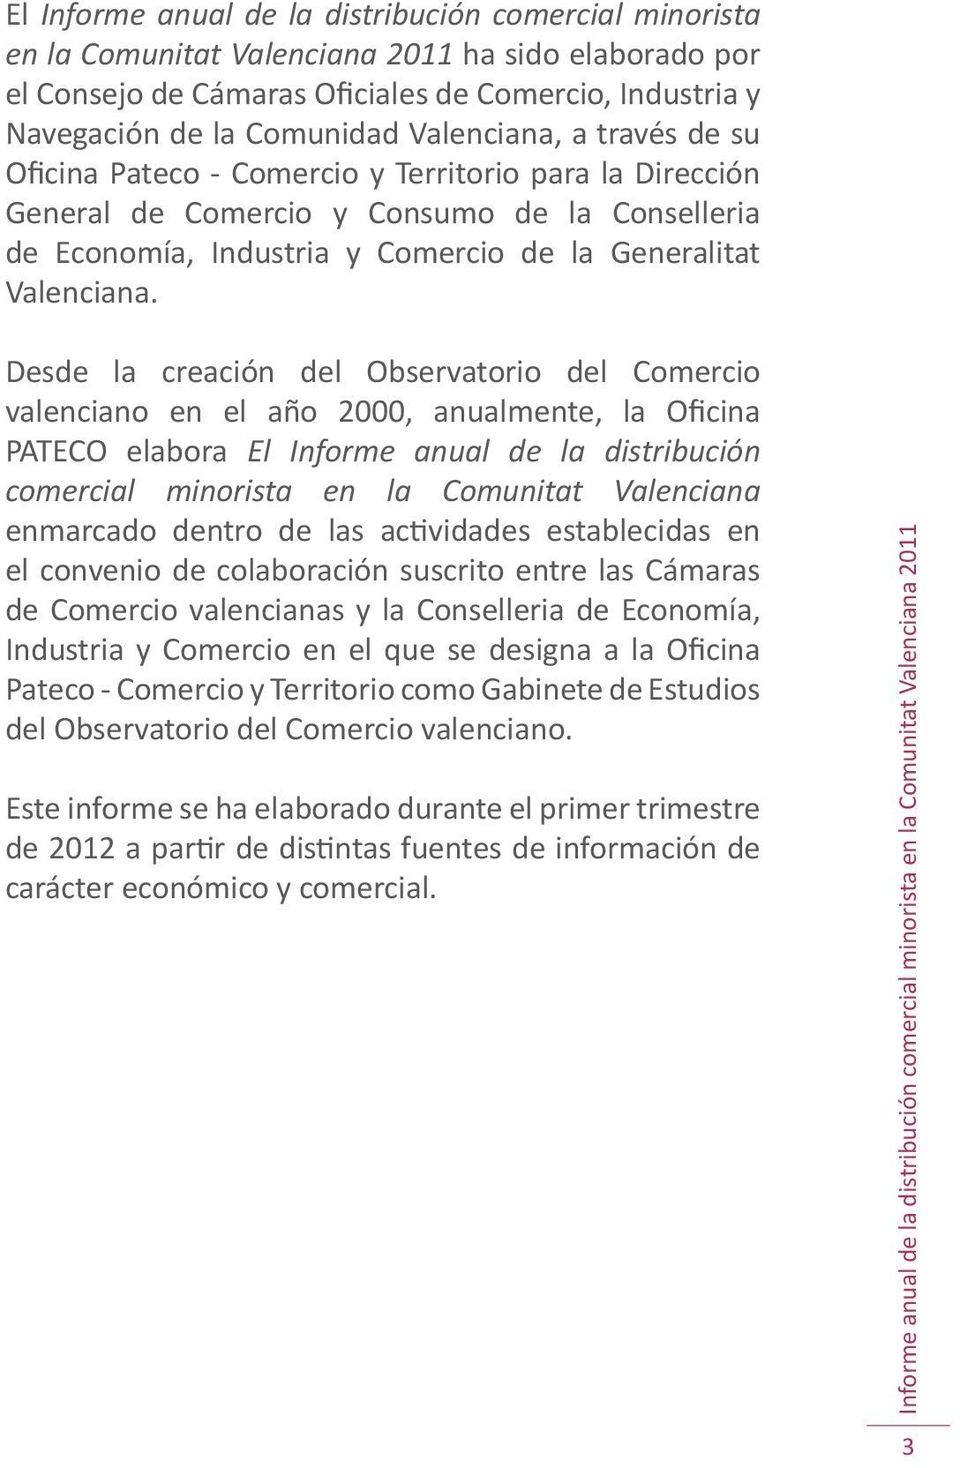 Desde la creación del Observatorio del Comercio valenciano en el año 2000, anualmente, la Oficina PATECO elabora El Informe anual de la distribución comercial minorista en la Comunitat Valenciana